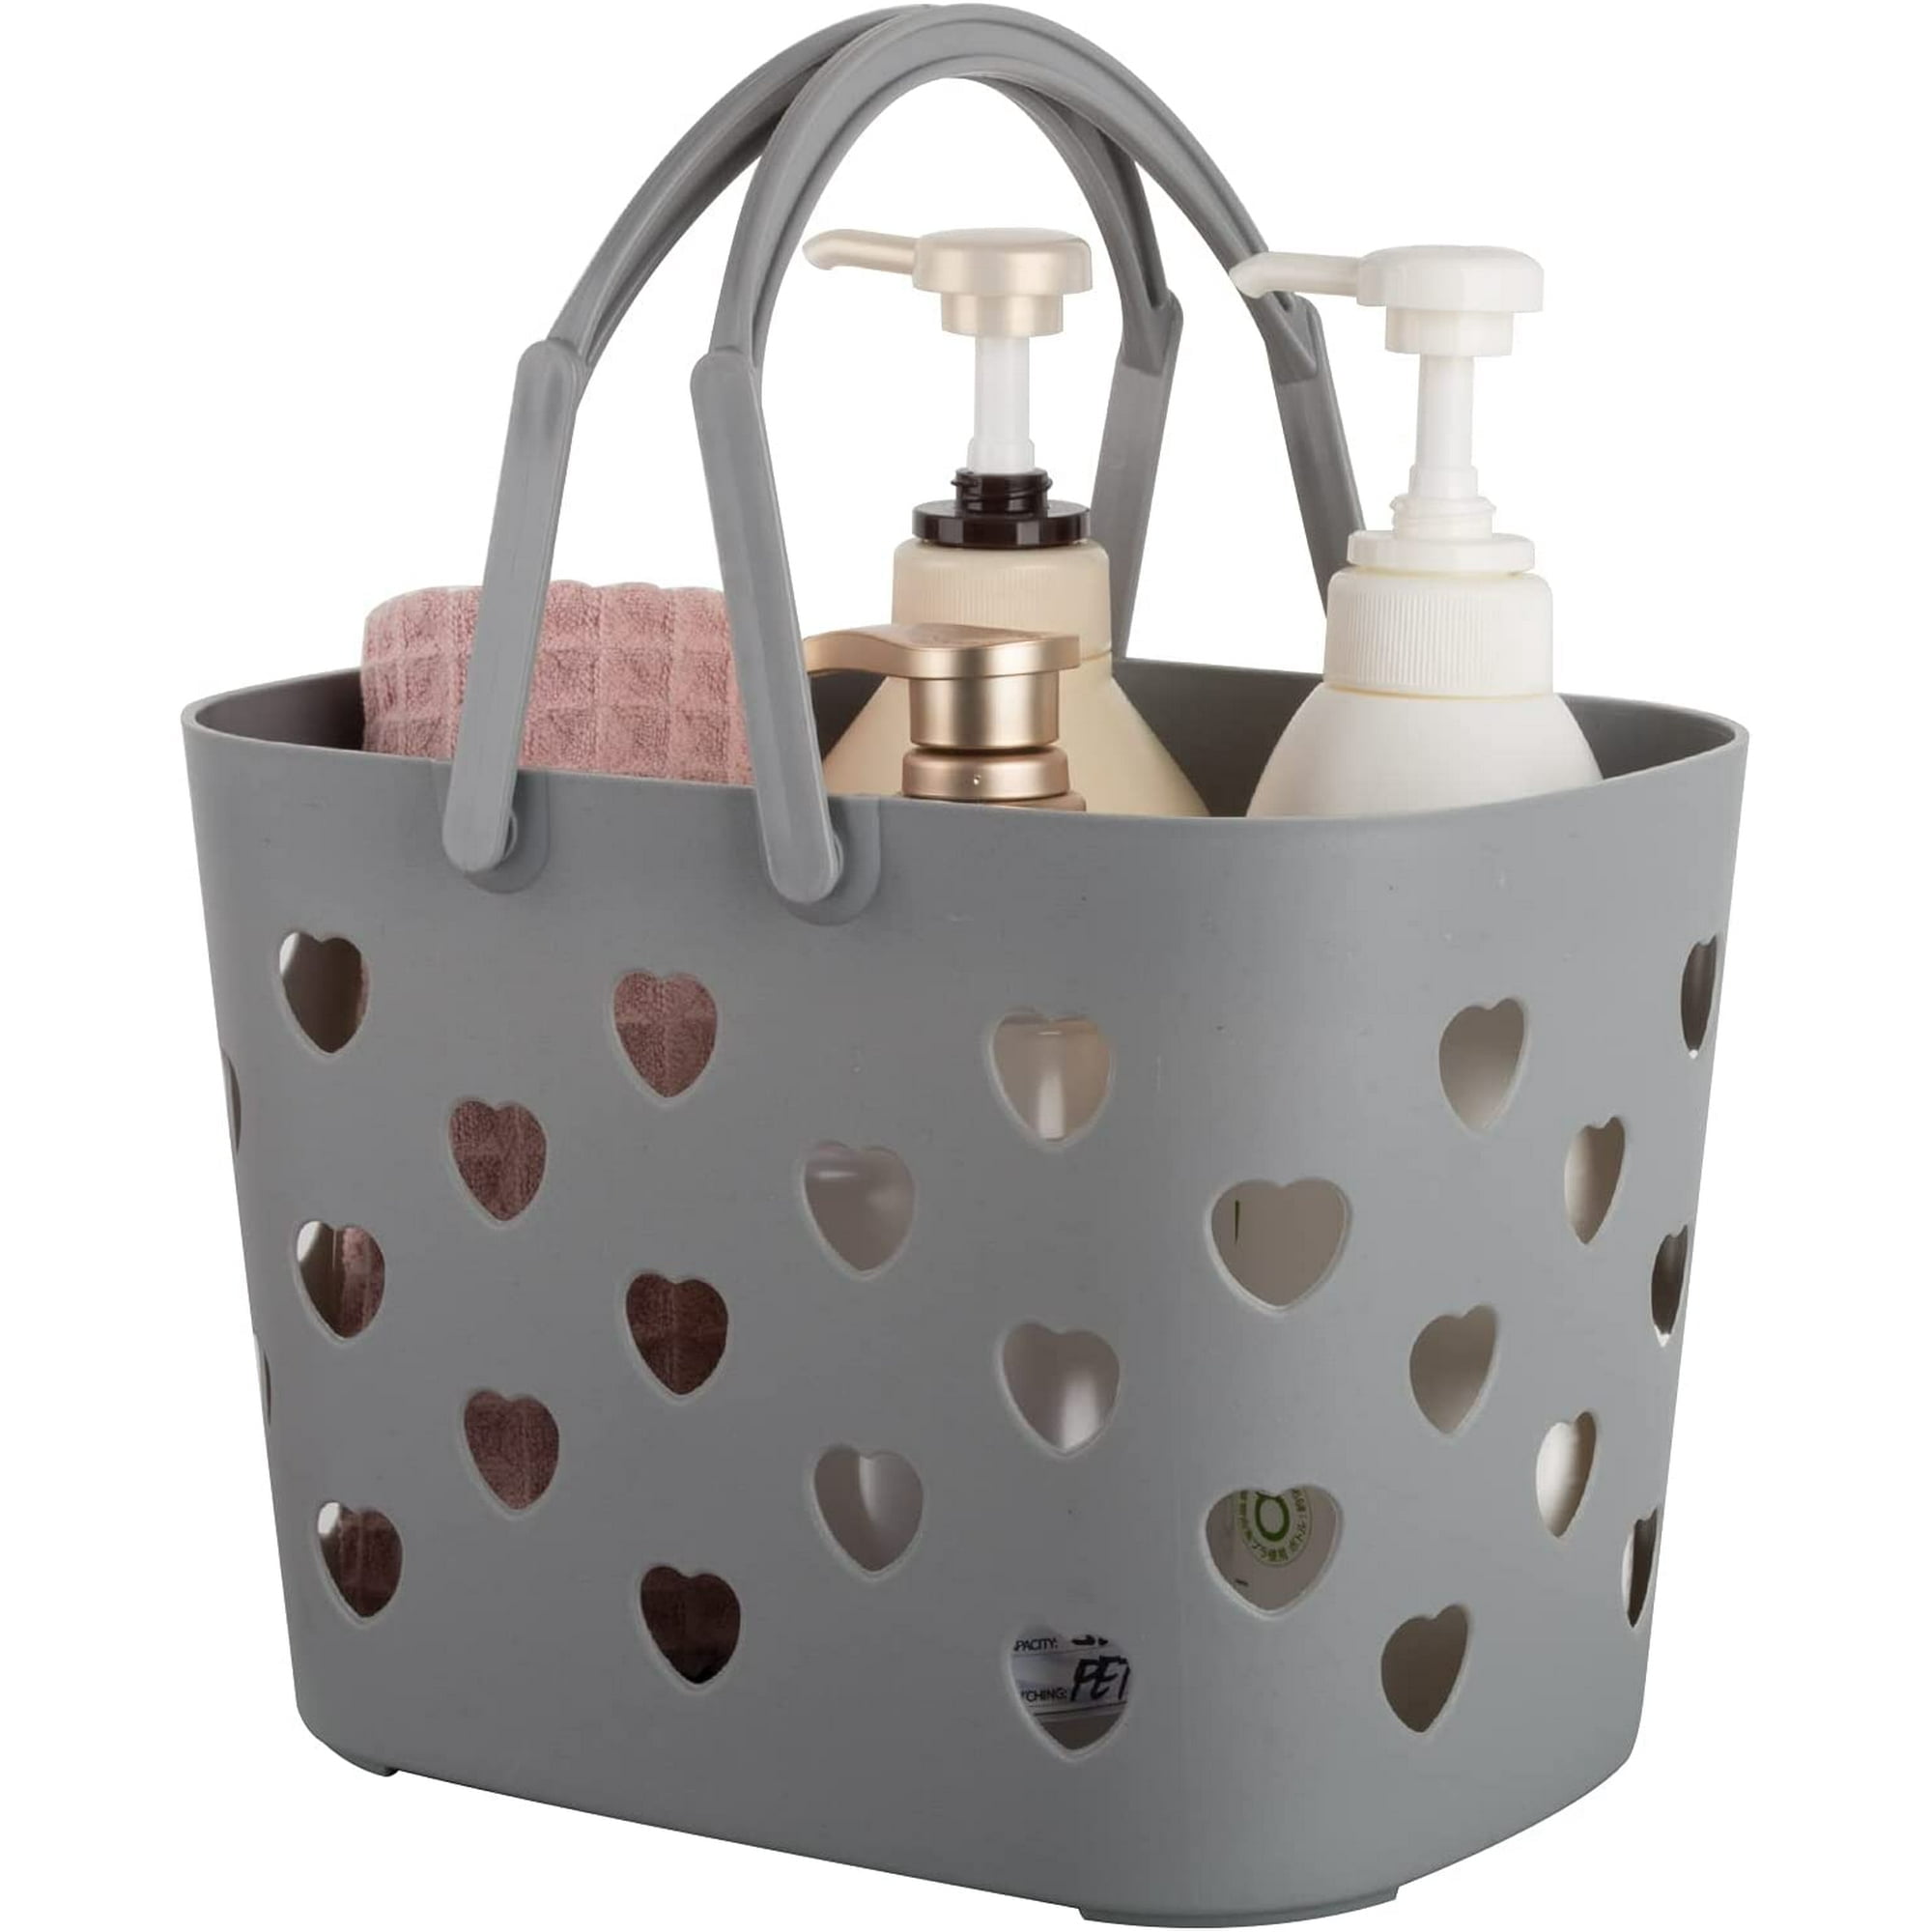 Happy Date Shower Caddy Basket, Portable Shower Tote, Dorm College Shower Organizer Bucket with Handles,Storage Bin Shower Caddy Organizer for